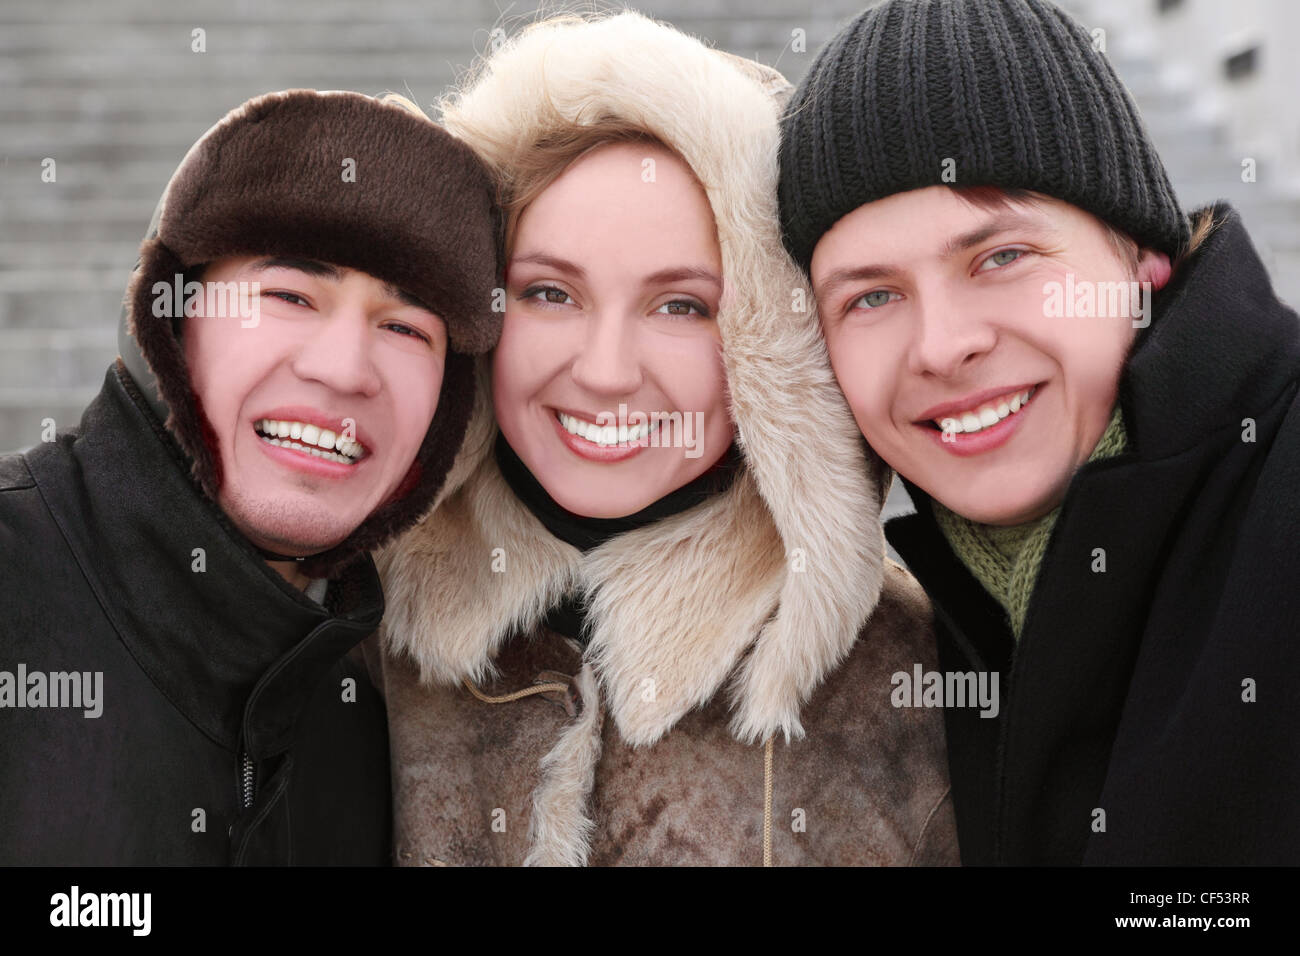 Trois amis smiling and looking at camera, moitié du corps, journée d'hiver, les escaliers d'arrière-plan Banque D'Images